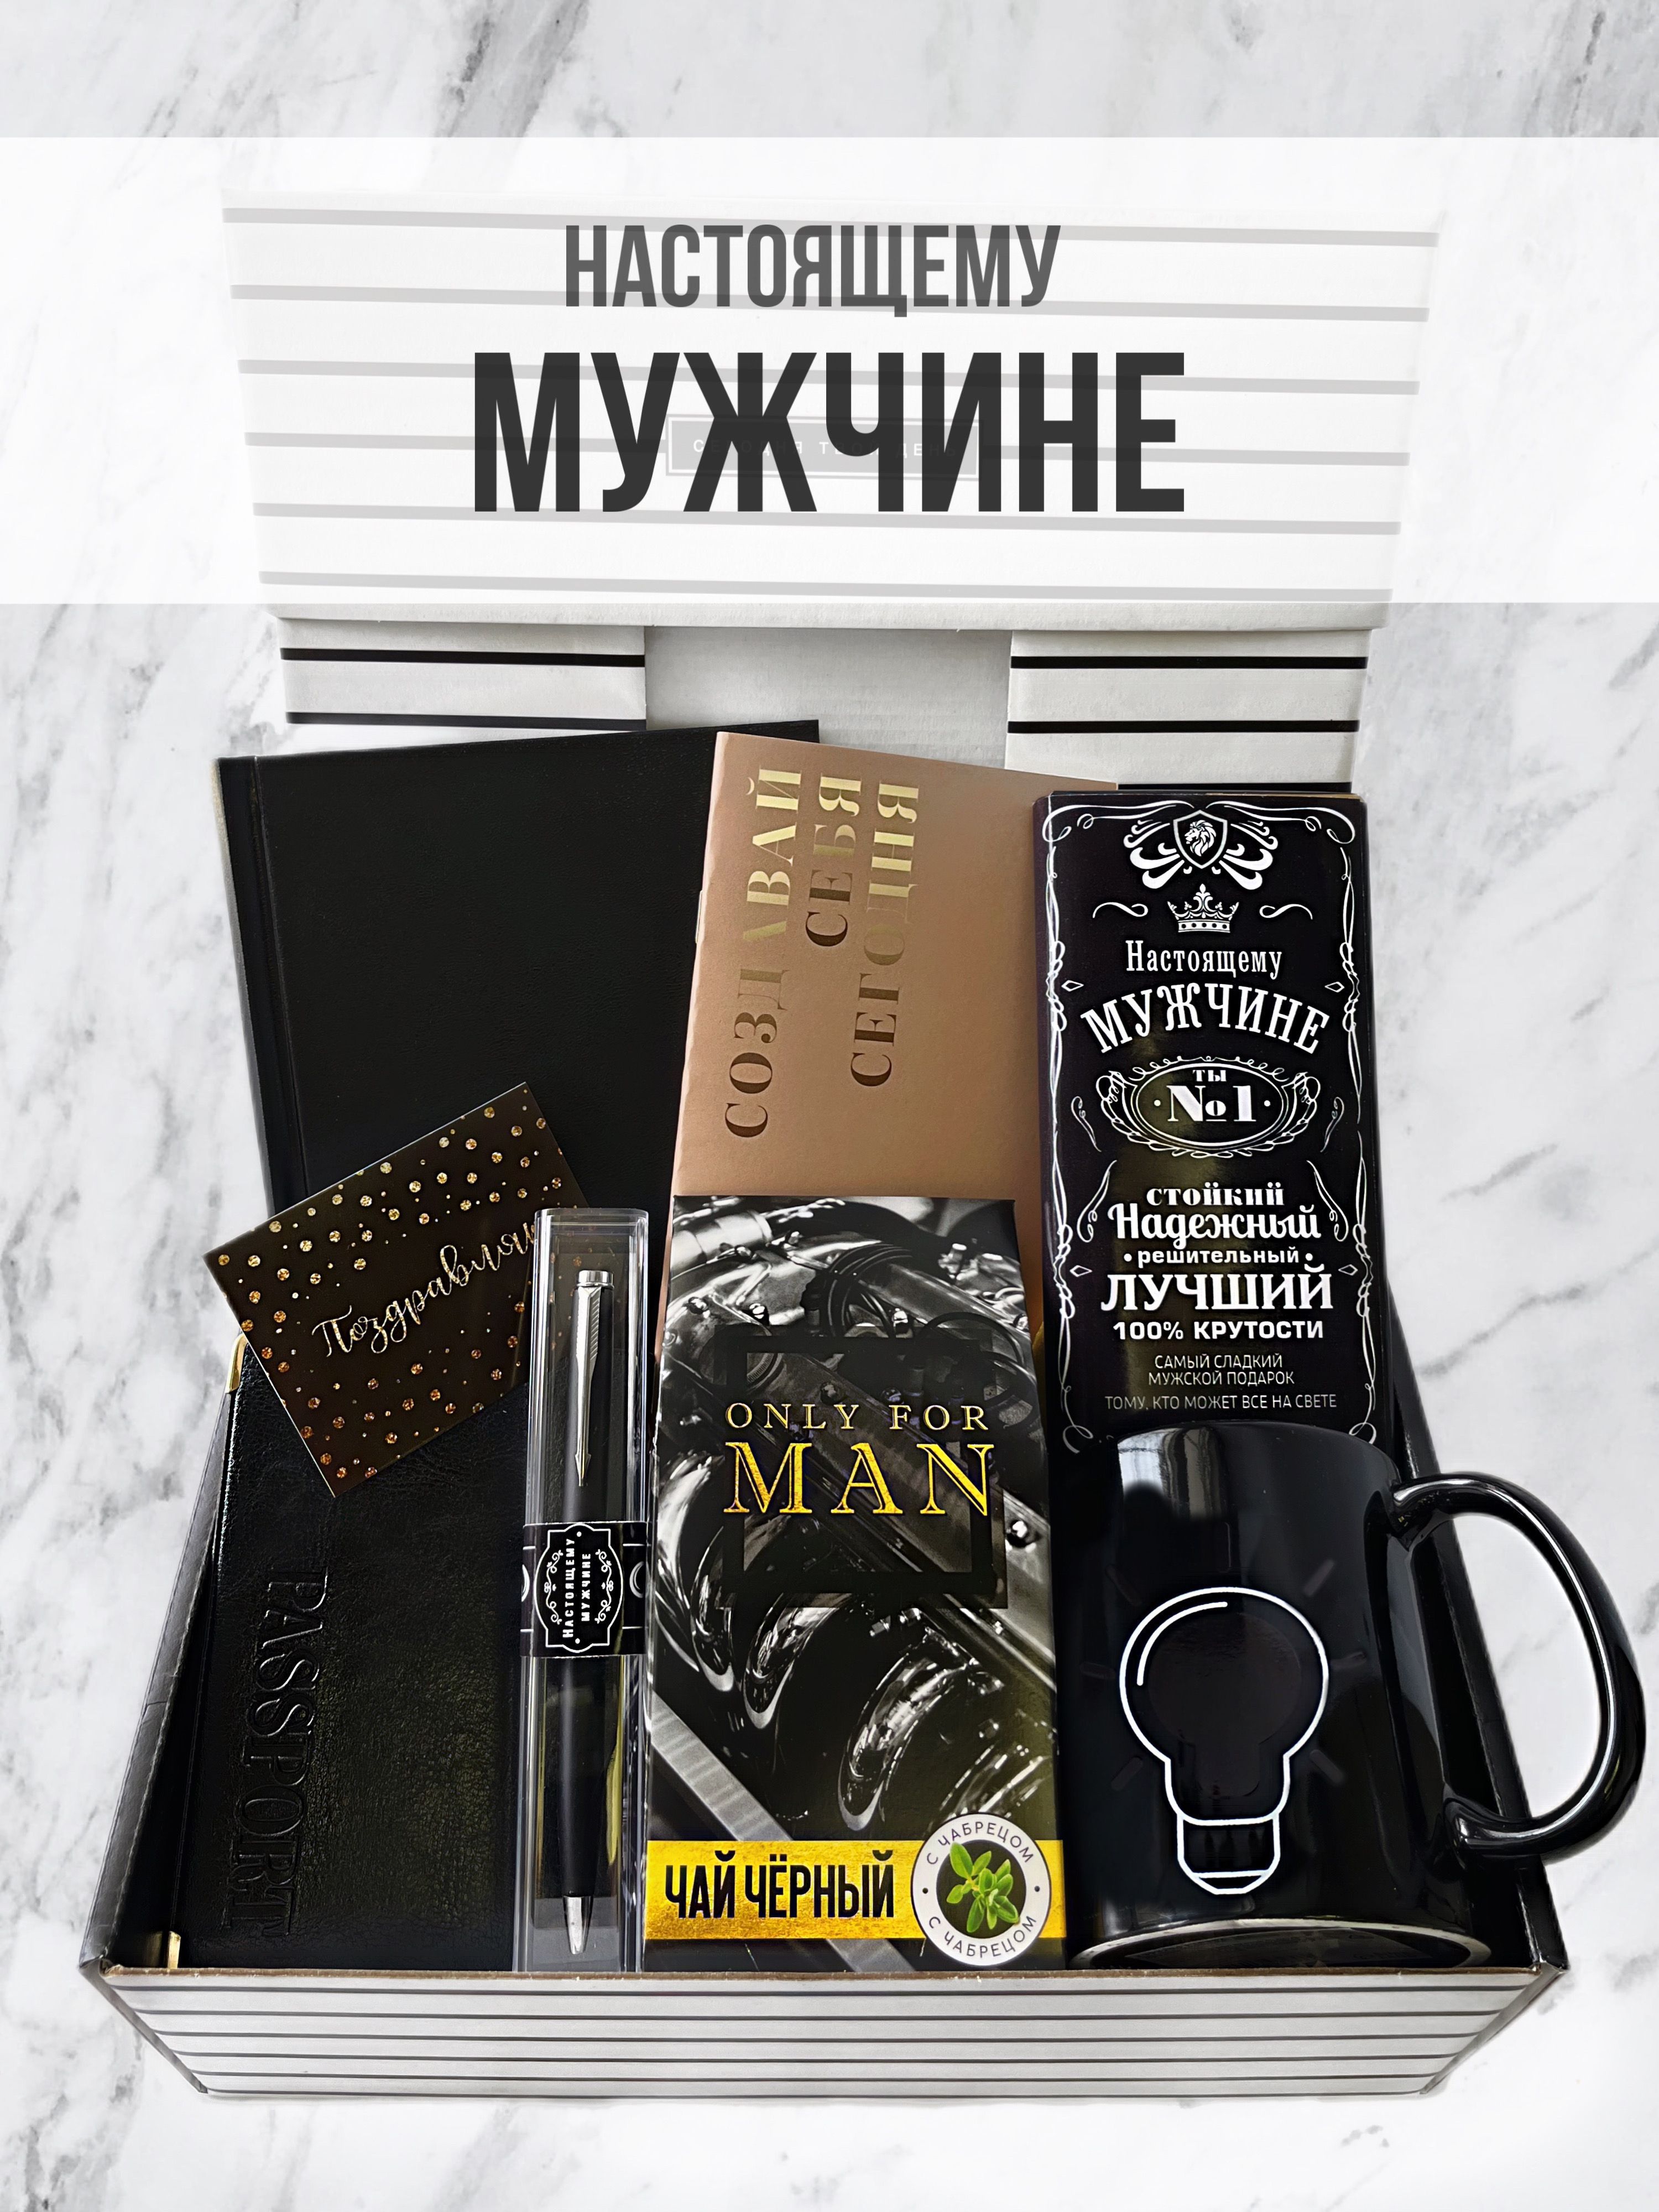 ТОП-20 подарков для настоящего мужчины ко дню рождения: поздравляем с LovePresent.ru